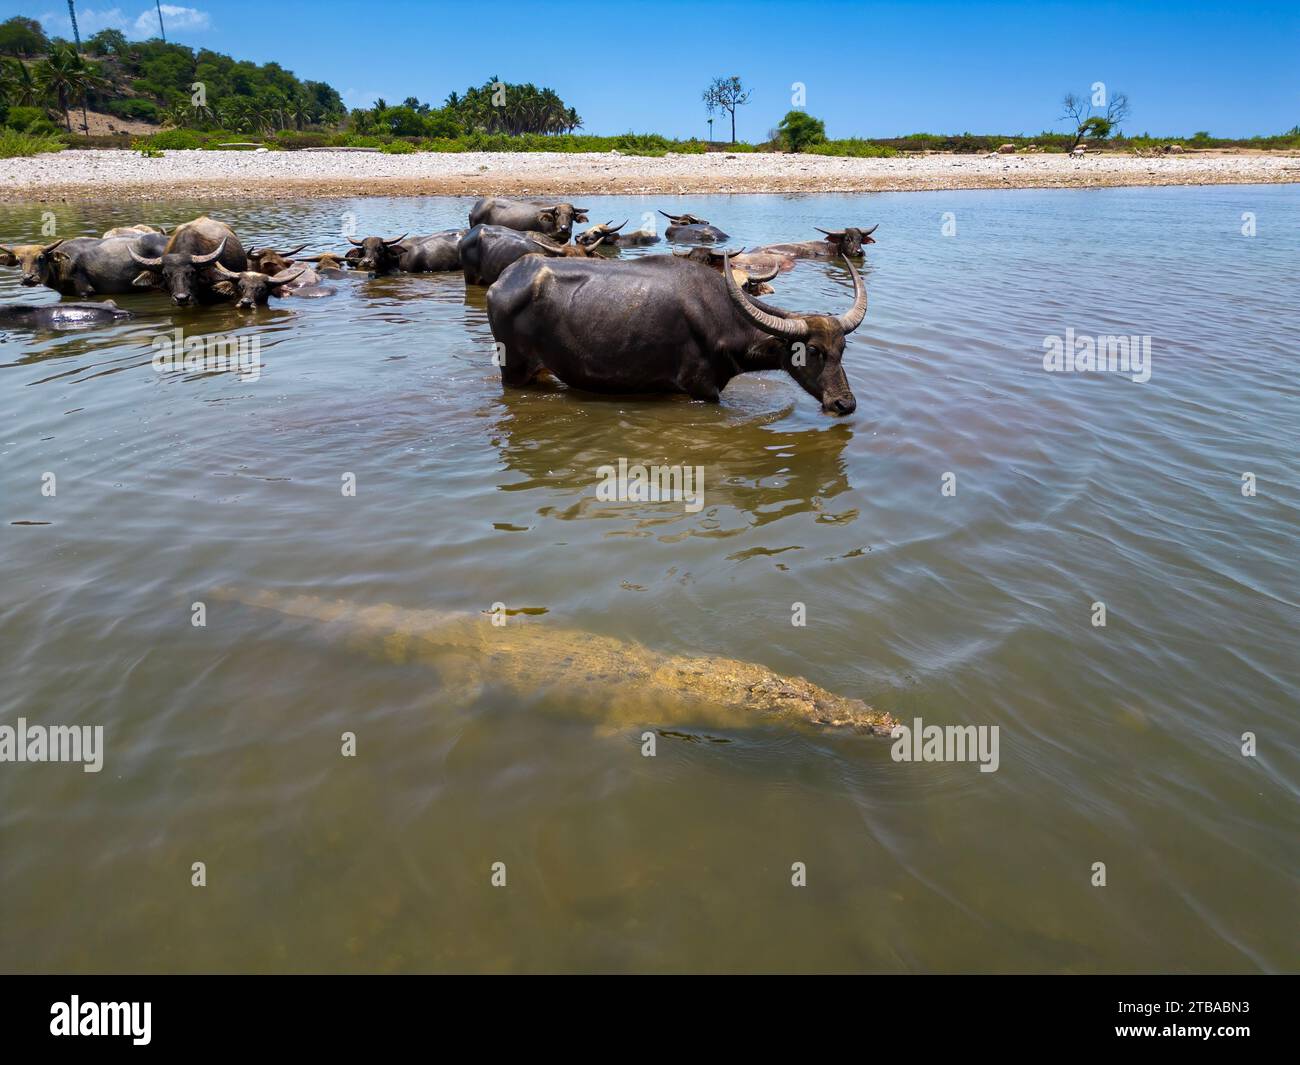 Questi bufali d'acqua domestici asiatici, Bubalus arnee, stanno tenendo d'occhio questo coccodrillo d'acqua salata, Crocodylus porosus, con cui condividono il fiume Foto Stock